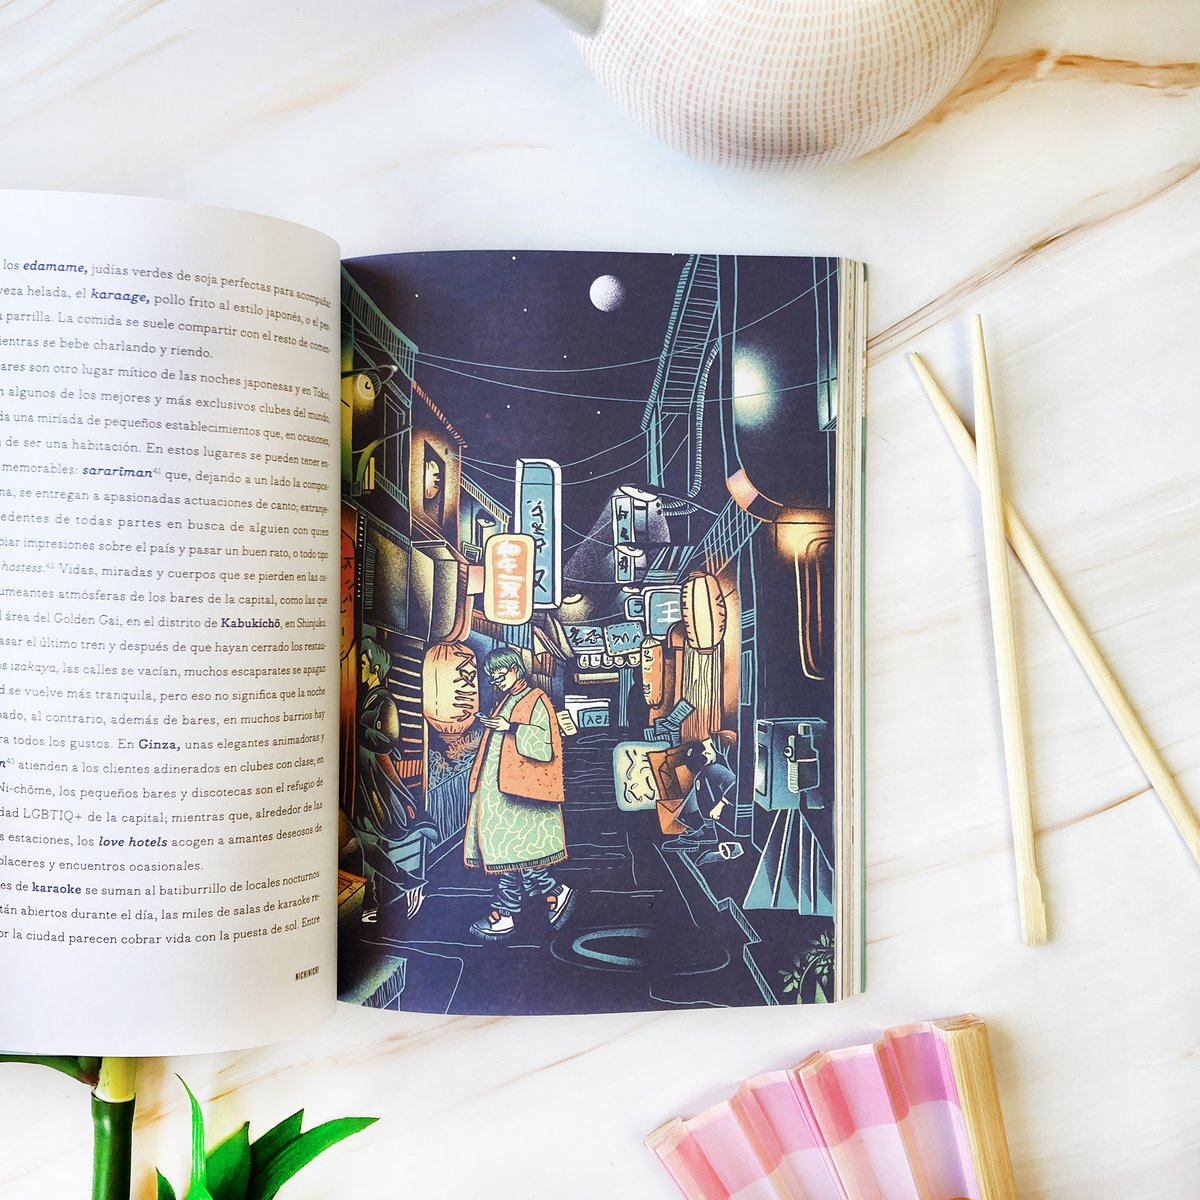 Este libro de Marco Reggiani explora en profundidad los aspectos más significativos de la vida cotidiana en #Japón. Sin duda, una valiosa aportación para formarnos una imagen de Japón más auténtica y cercana a la cotidianidad del país y de sus habitantes. ow.ly/HU3150RyYnX